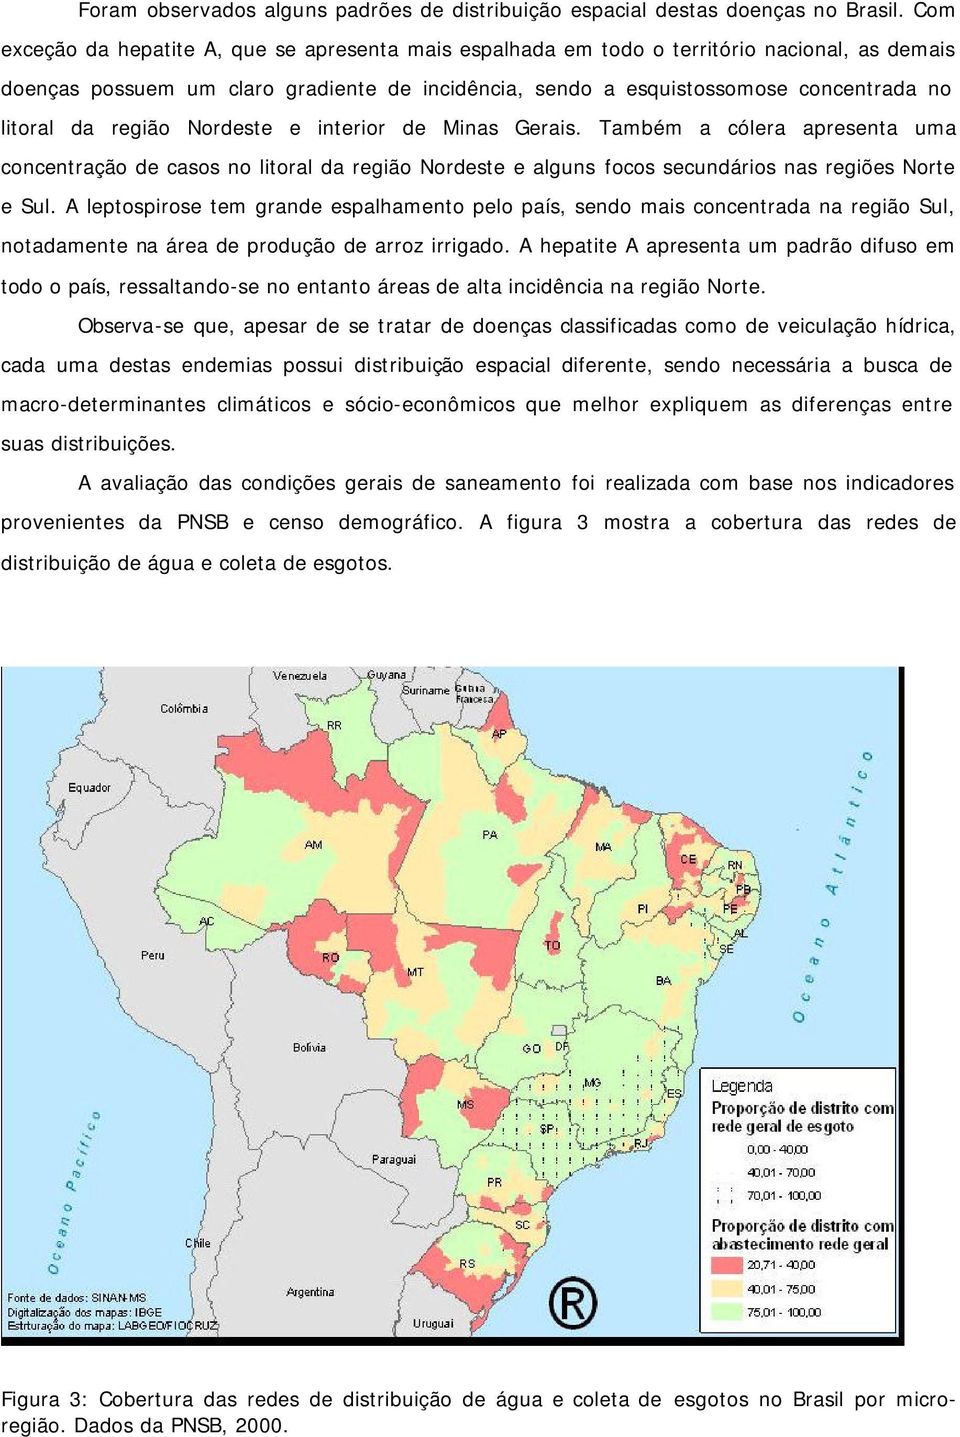 região Nordeste e interior de Minas Gerais. Também a cólera apresenta uma concentração de casos no litoral da região Nordeste e alguns focos secundários nas regiões Norte e Sul.